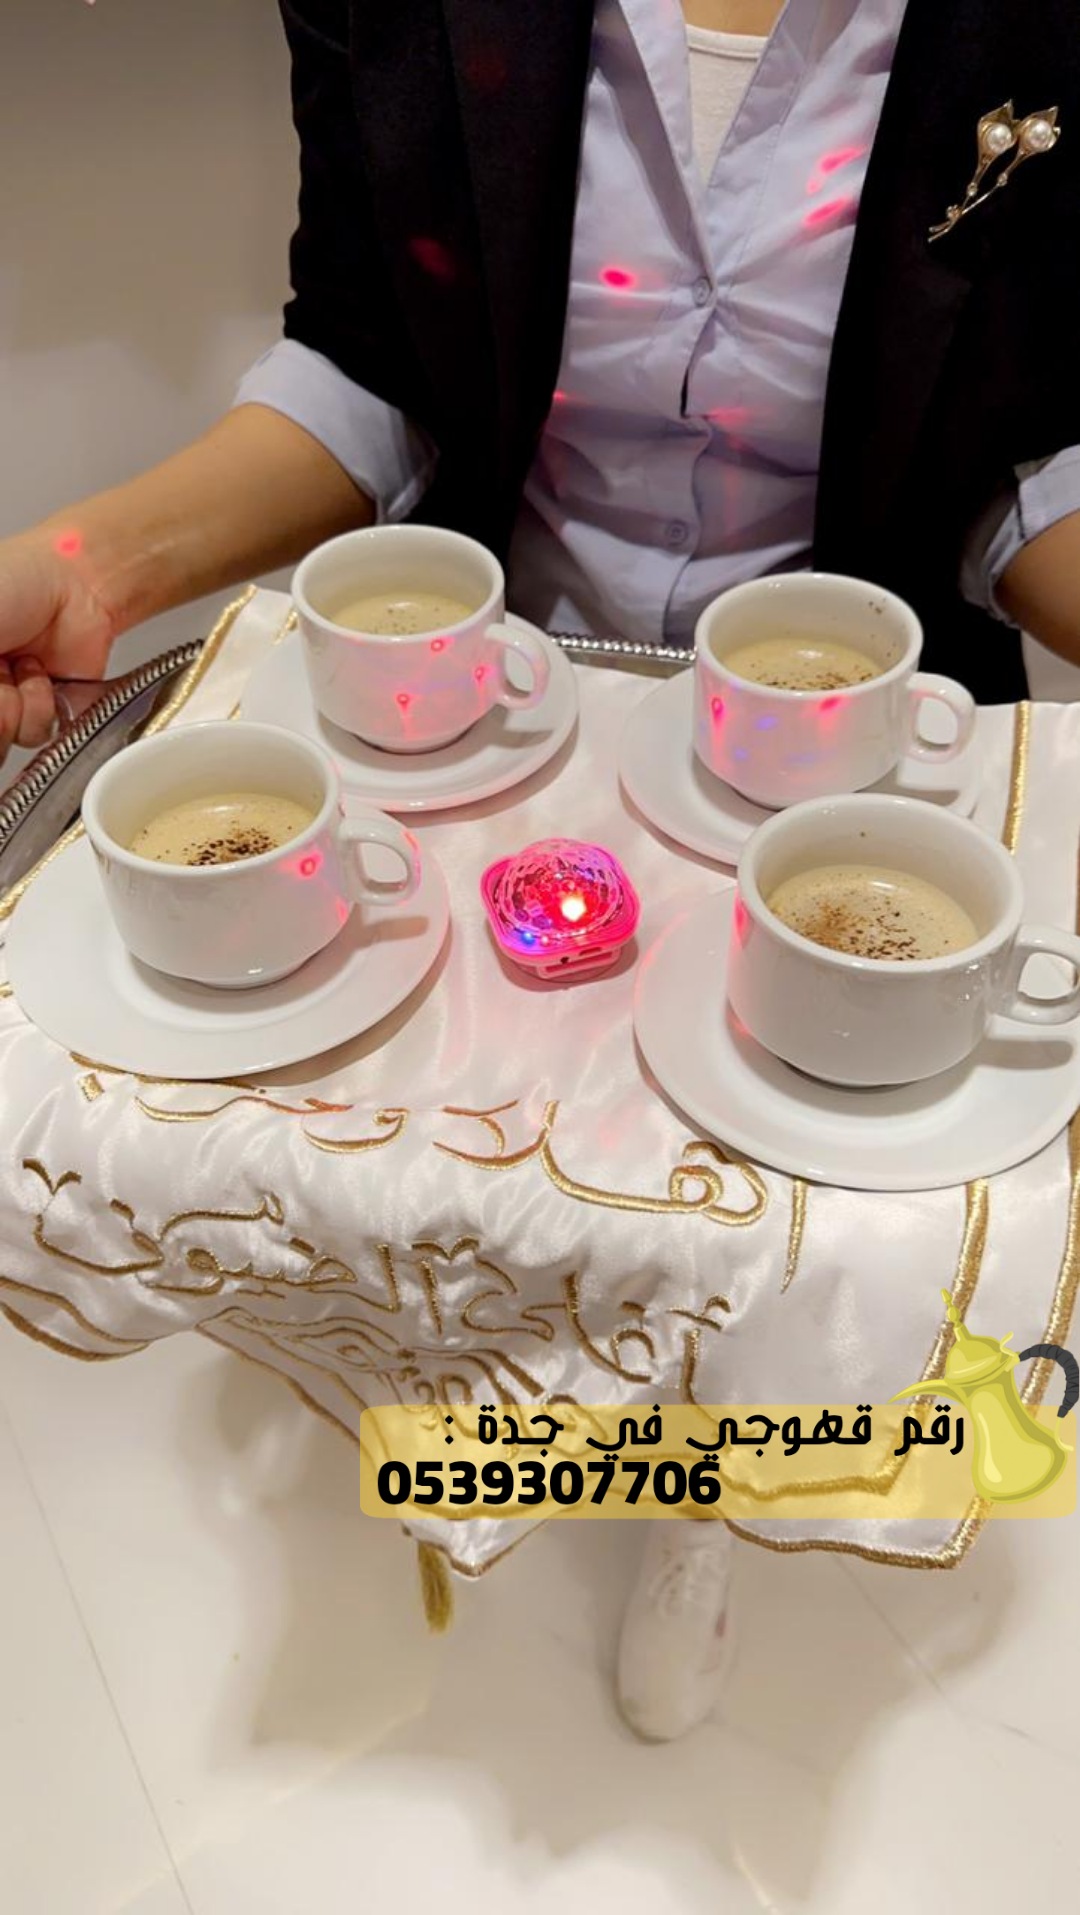 رقم قهوجيين مباشرين قهوة في جدة,0539307706